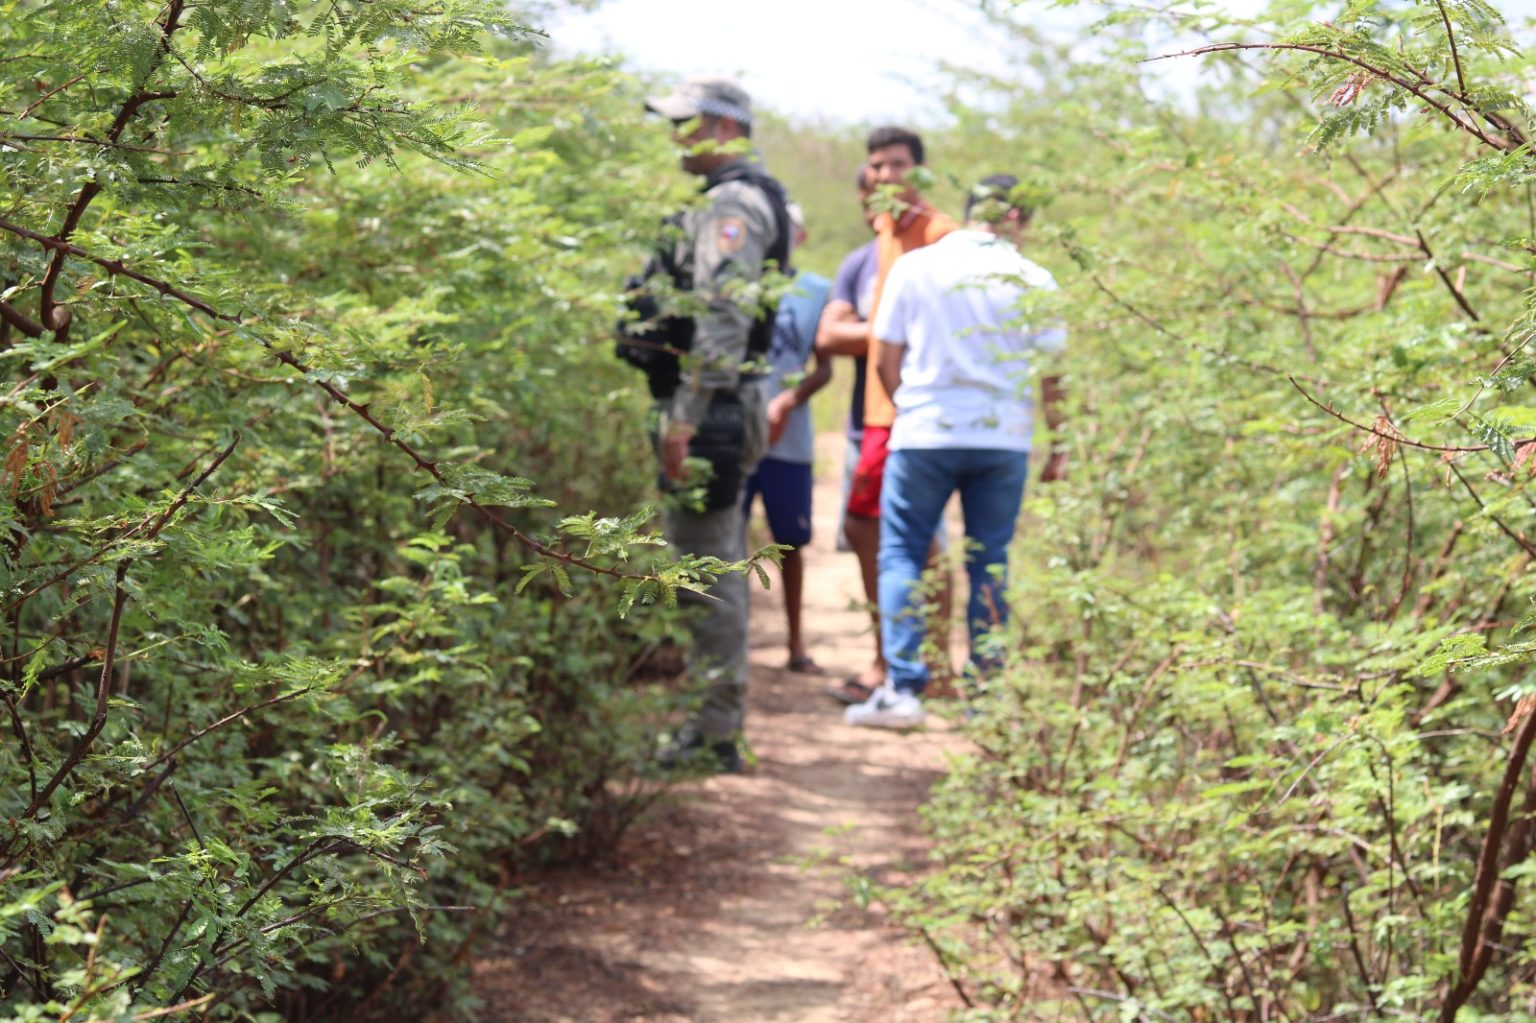 Jovem é assassinado a tiros e encontrado pela população na Zona Rural de Caraúbas